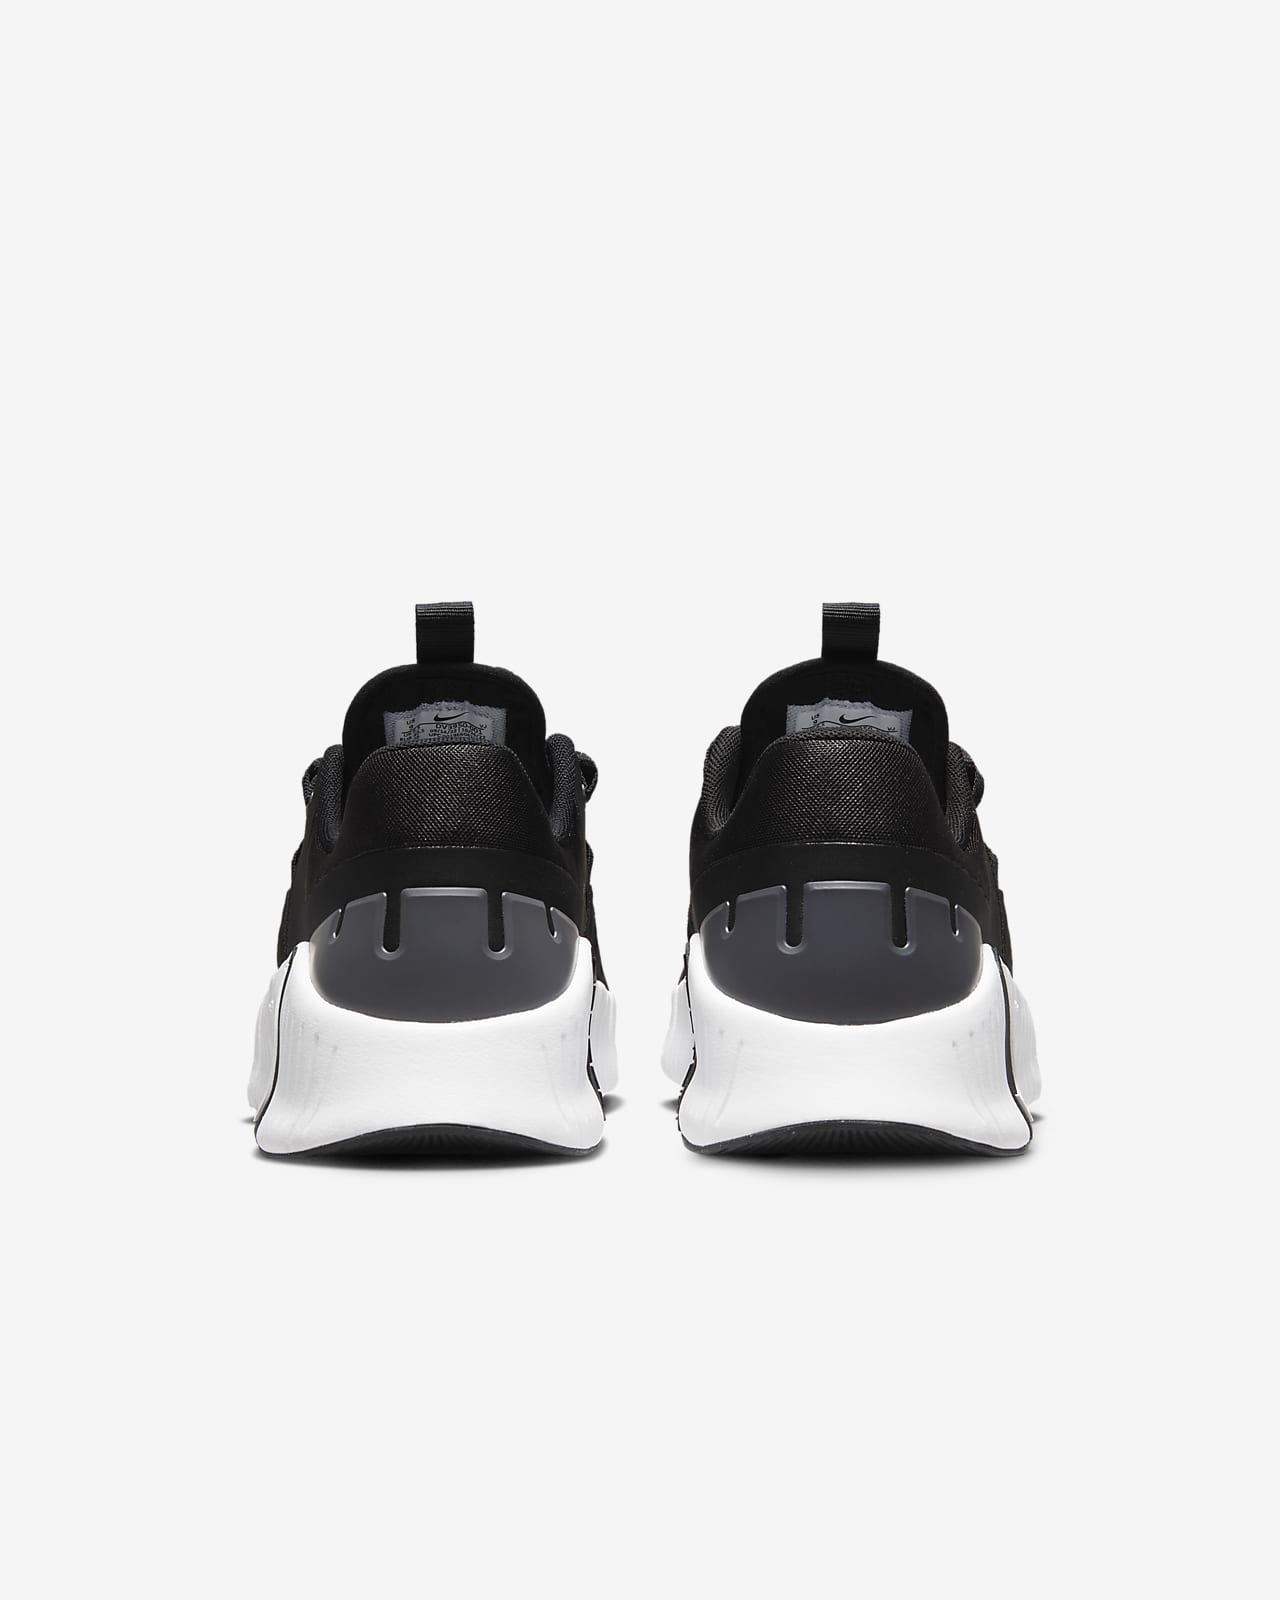 Nike, Metcon 8 Womens Training Shoes, Black/White